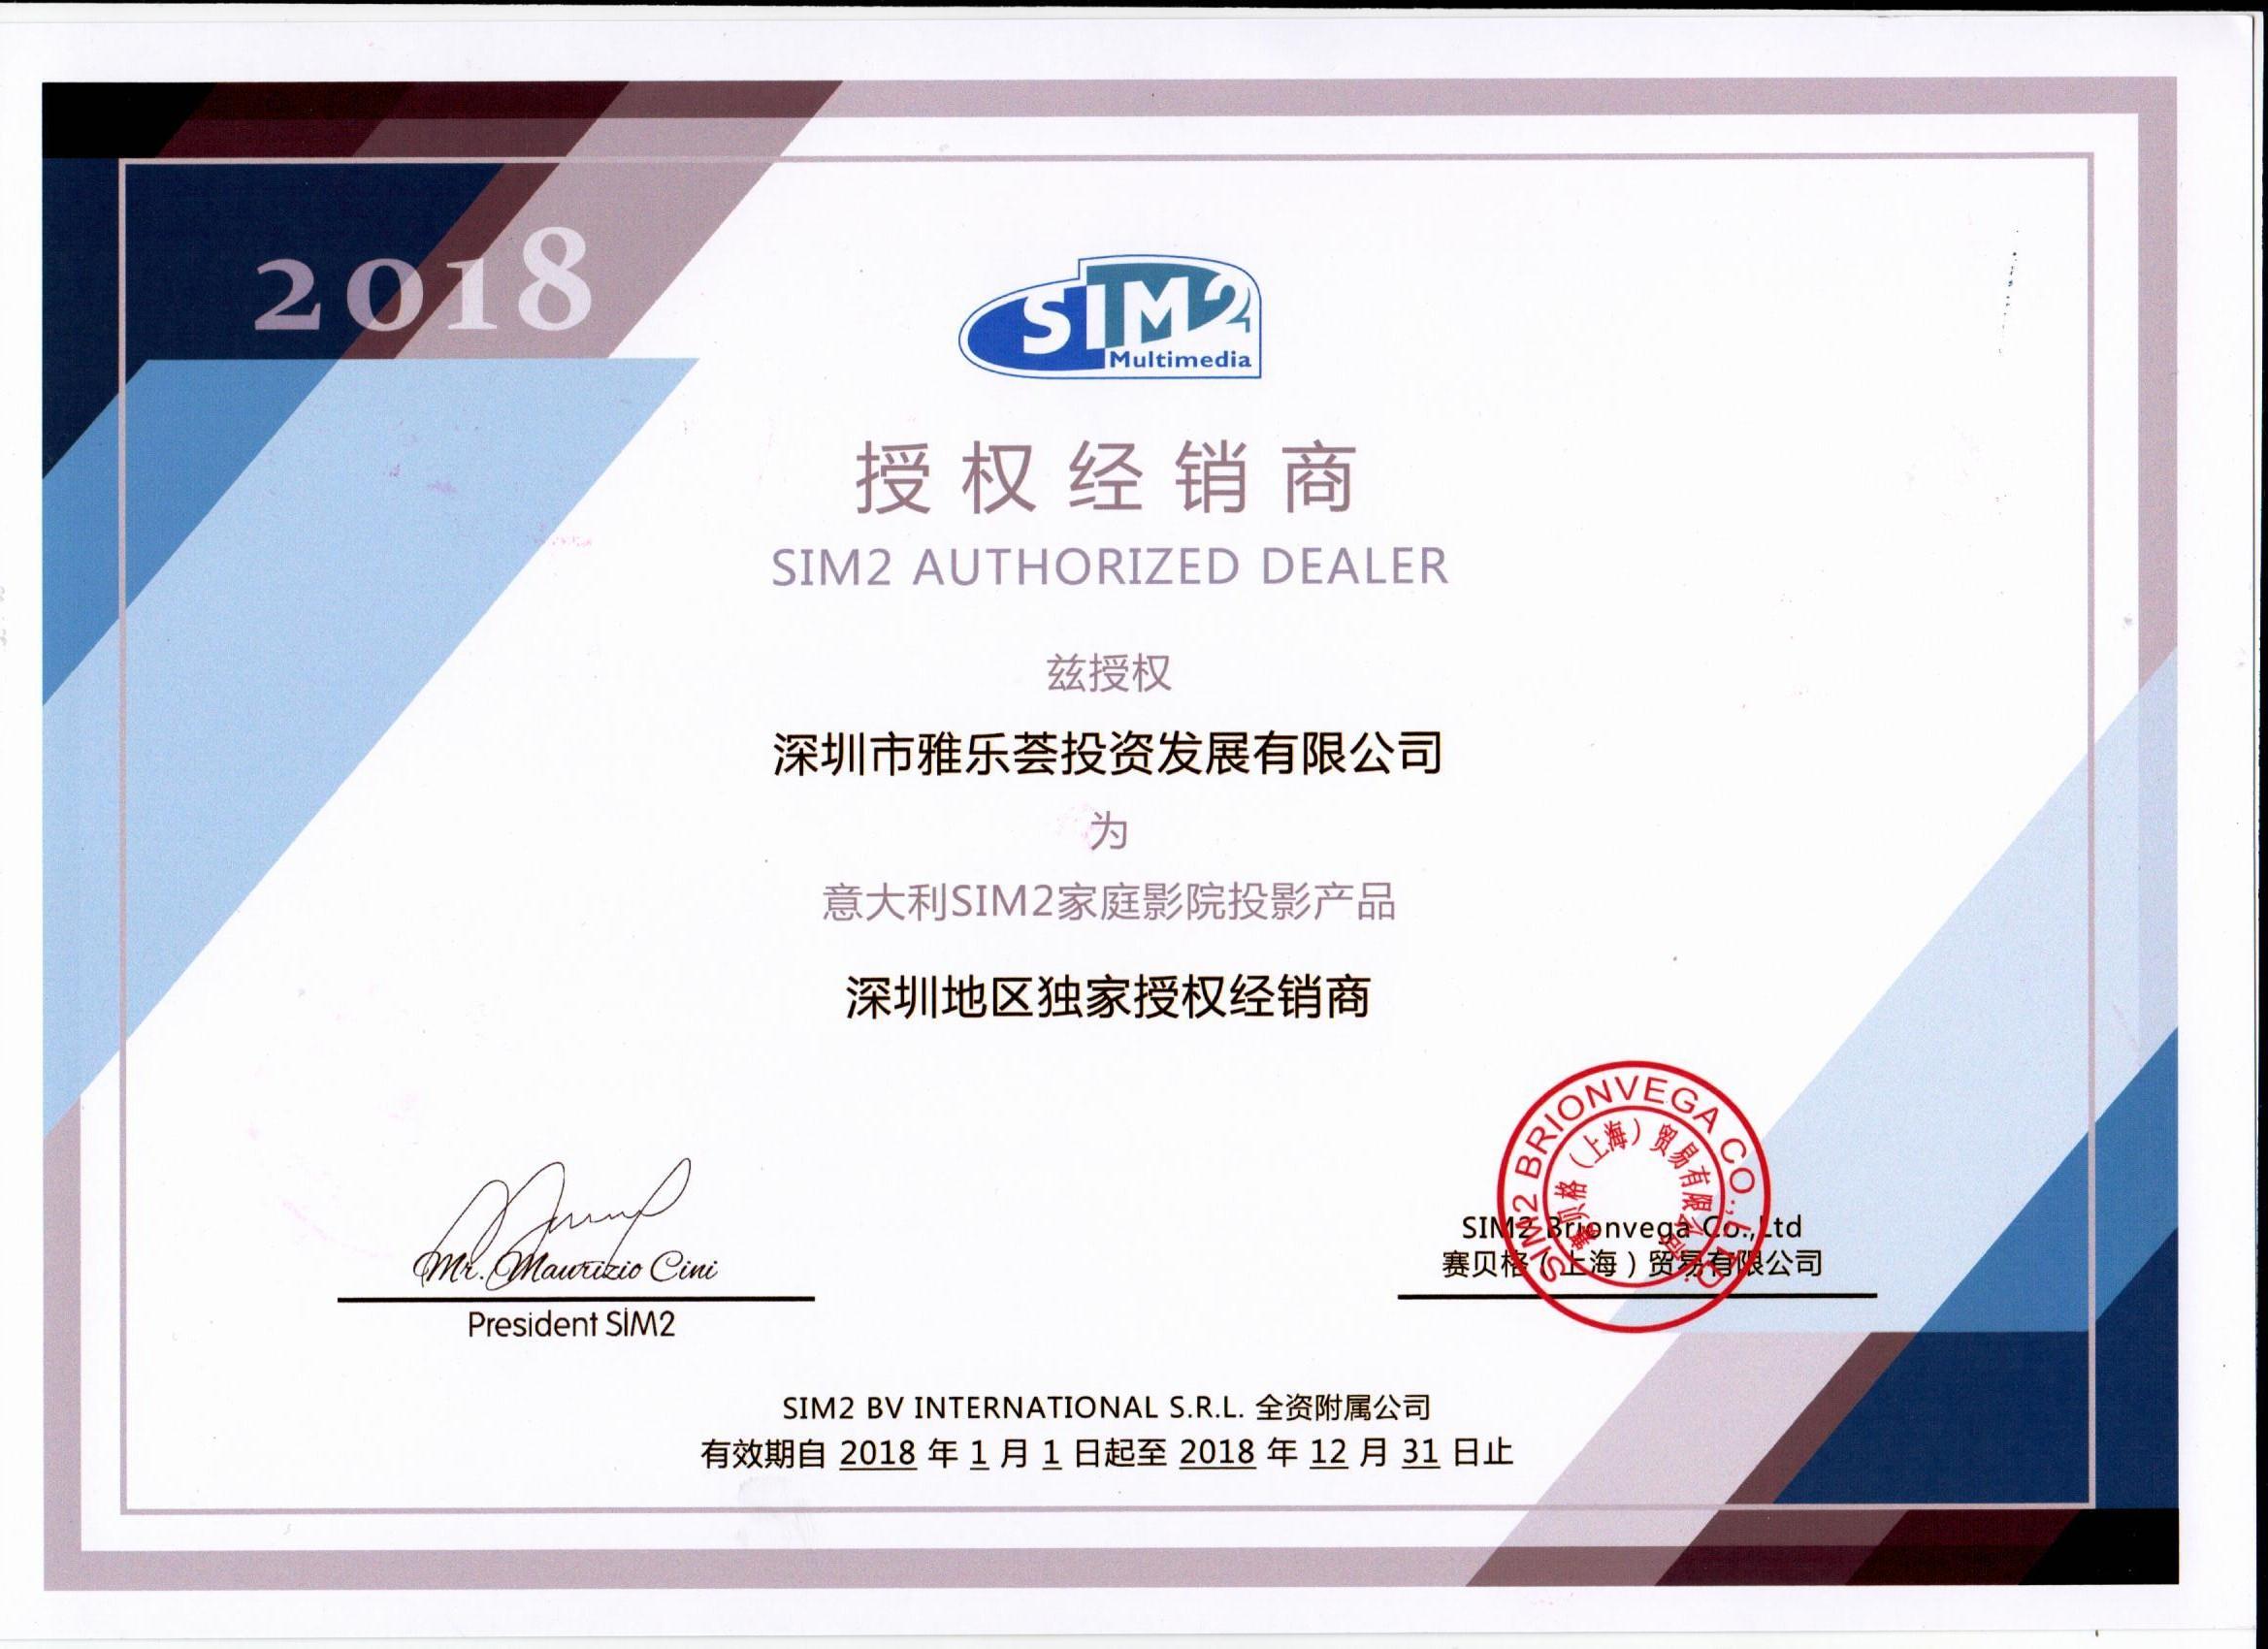 意大利SIM2家庭影院投影产品深圳地区独家授权经销商